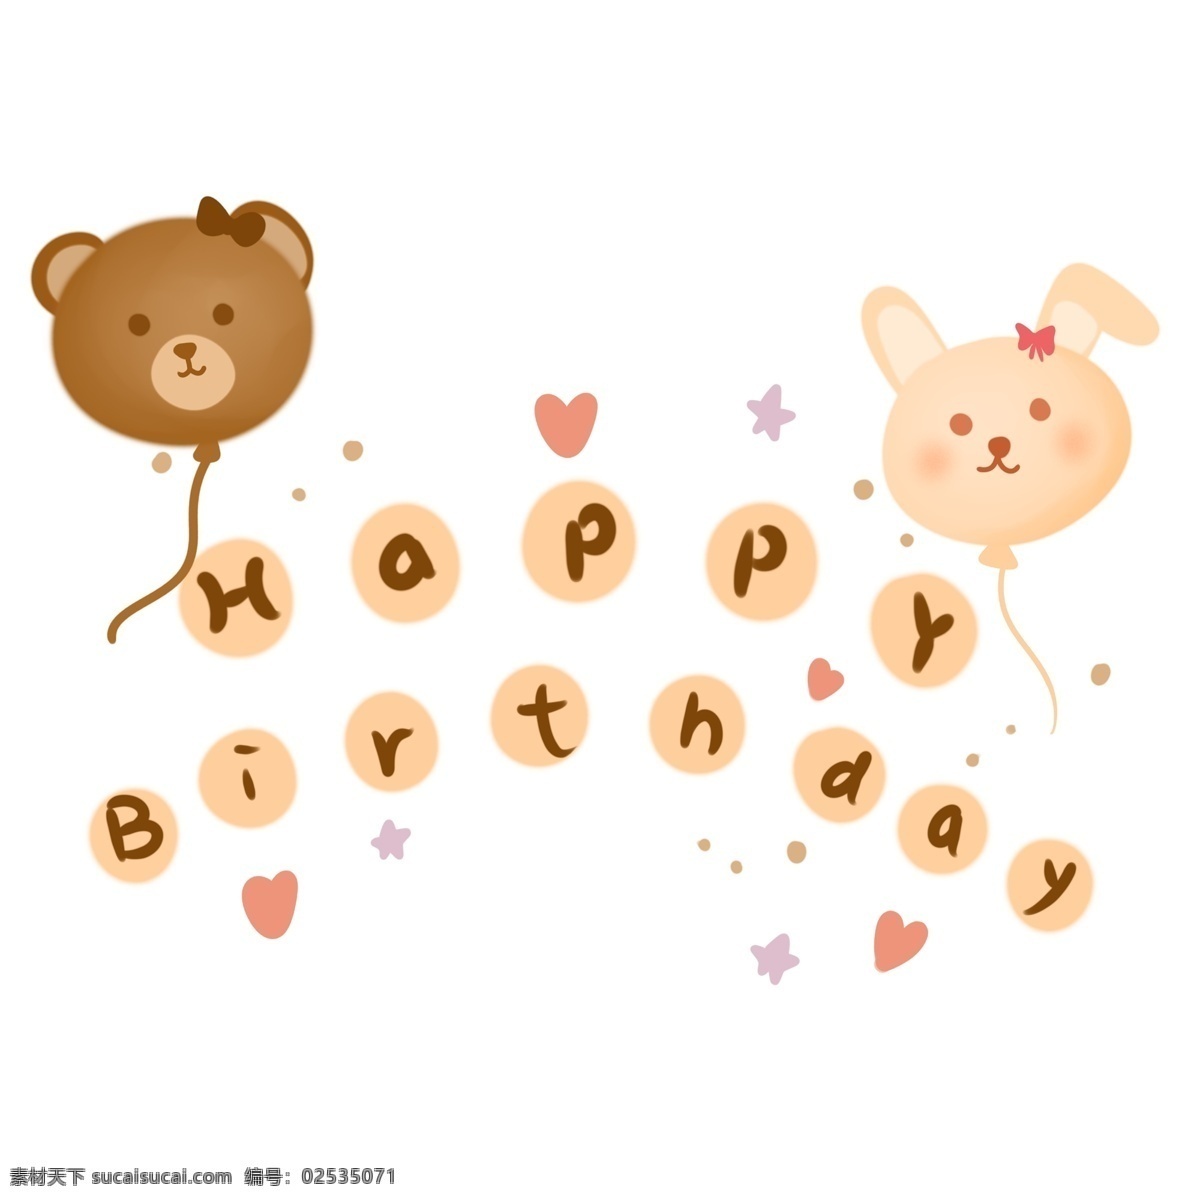 卡通 动物 生日 快乐 小熊 兔子 气球 童趣 可爱 生日快乐 生日派对 生日祝福 贺卡 装饰